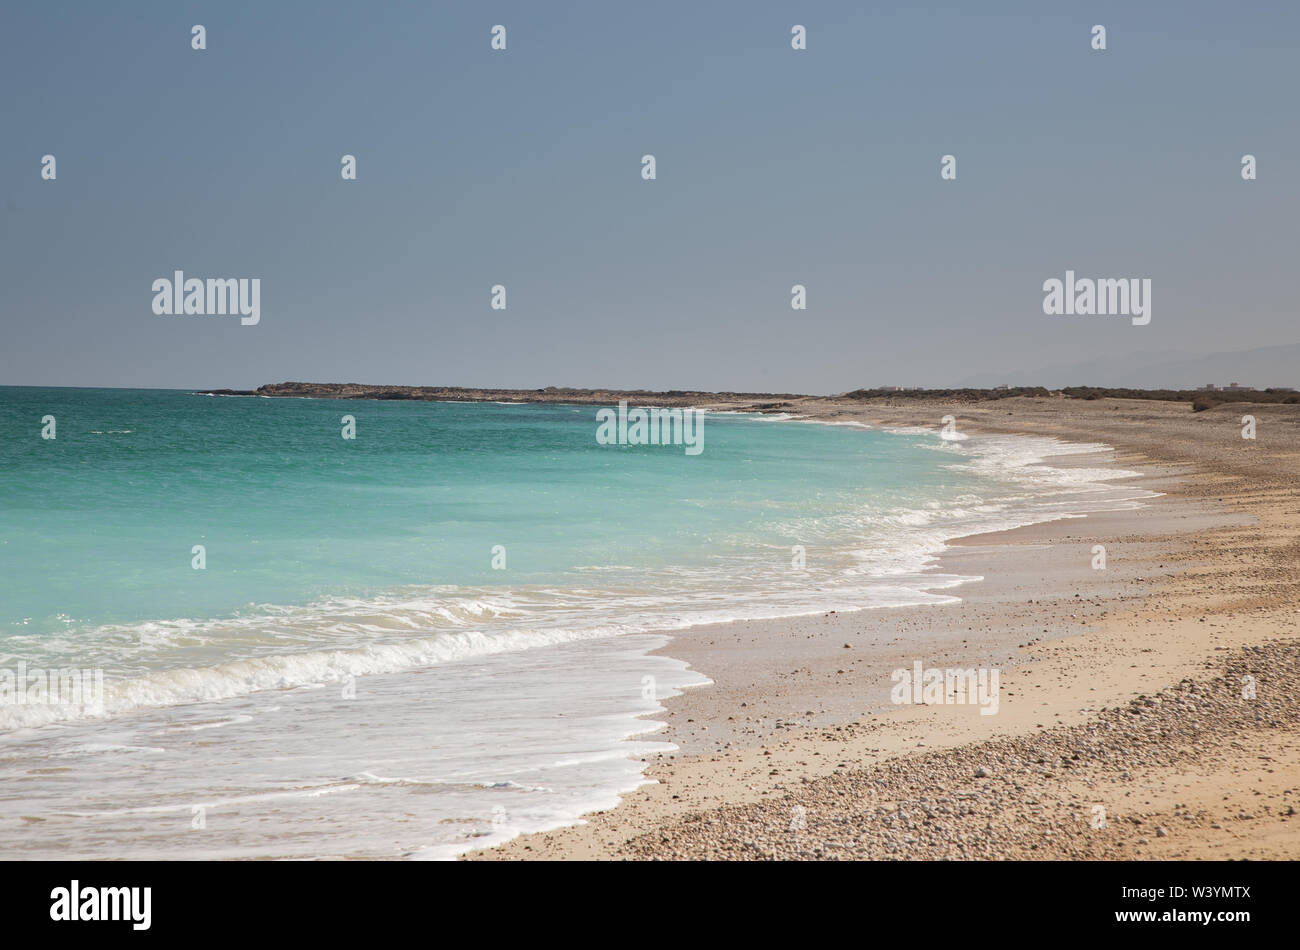 Beautiful arabic coastline, Oman Stock Photo